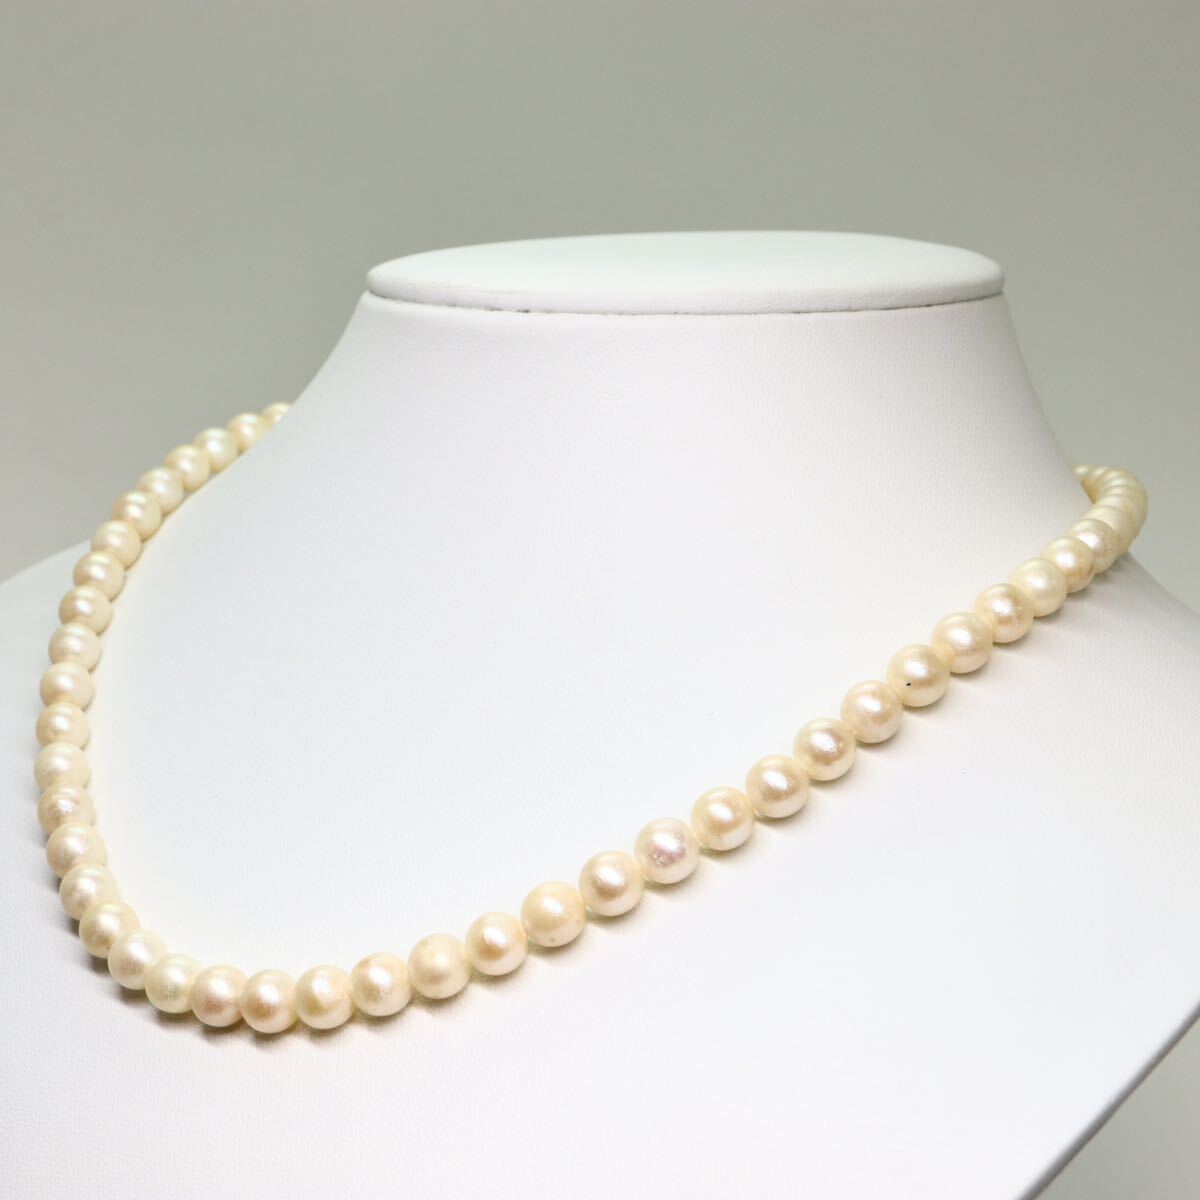 《アコヤ本真珠ネックレス》M 28.7g 約44.5cm 約6.5-7.0mm珠 pearl パール necklace ジュエリー jewelry CE0/DA0_画像3